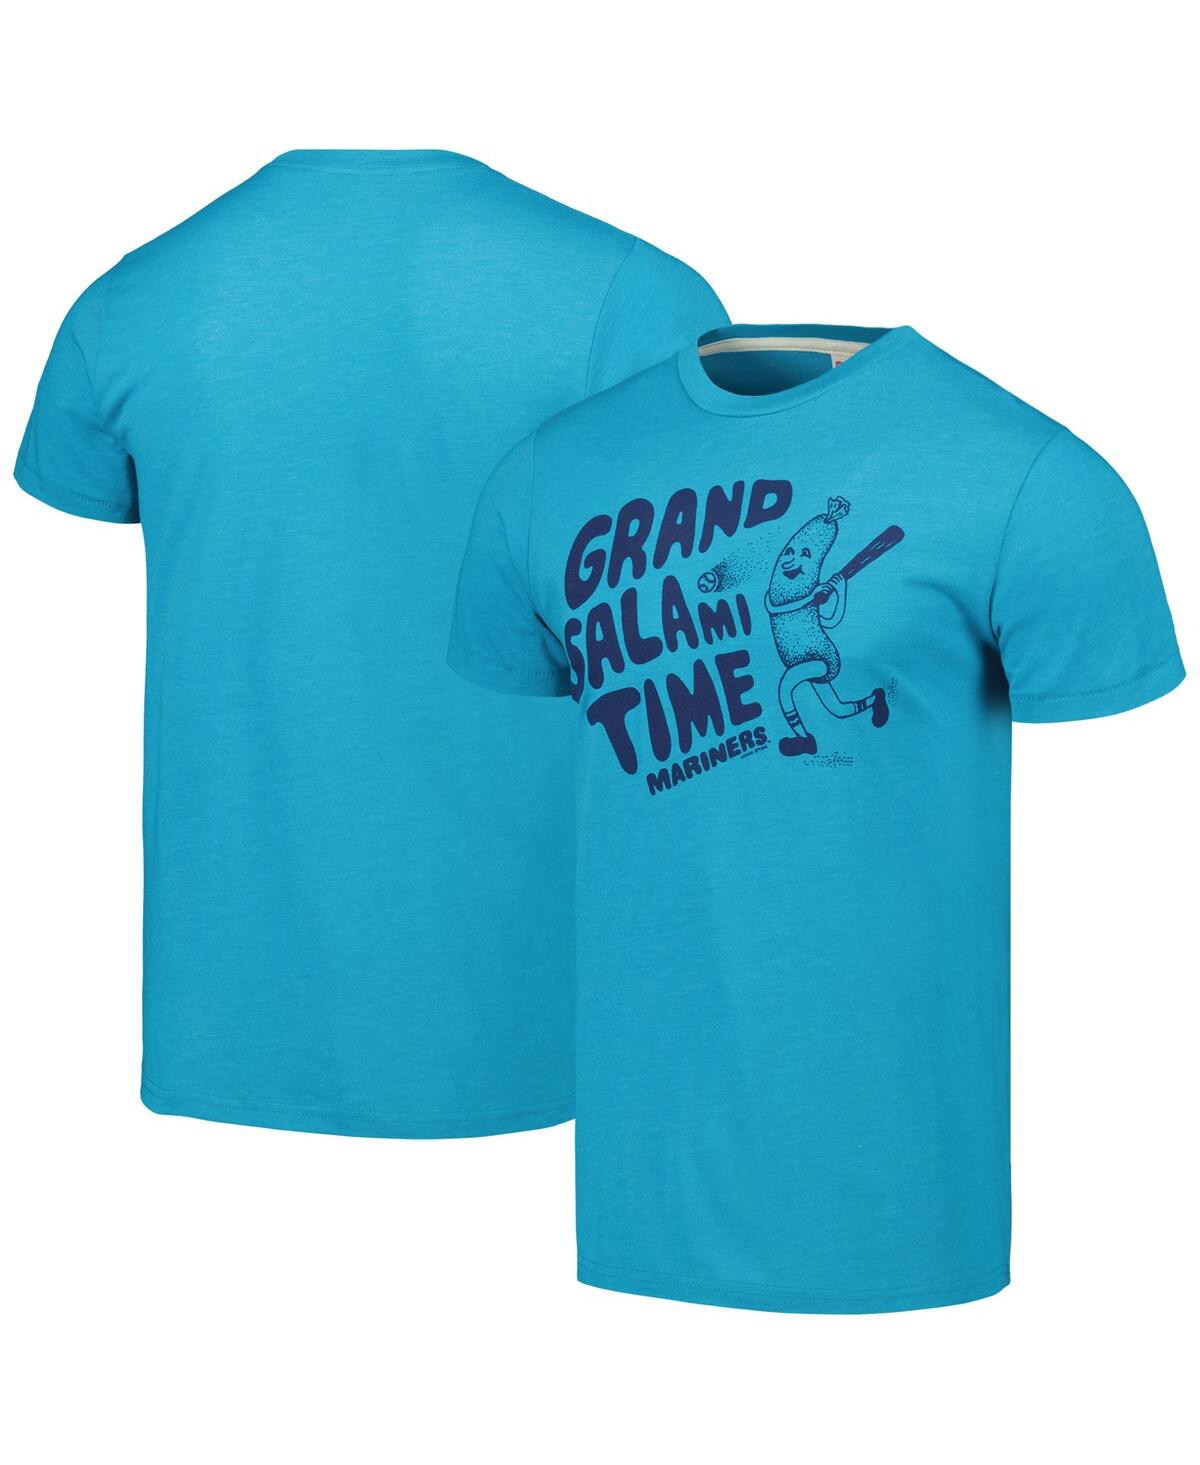 Men's Homage Aqua Seattle Mariners Grand Salami Time Hyper Local Tri-Blend T-shirt - Aqua